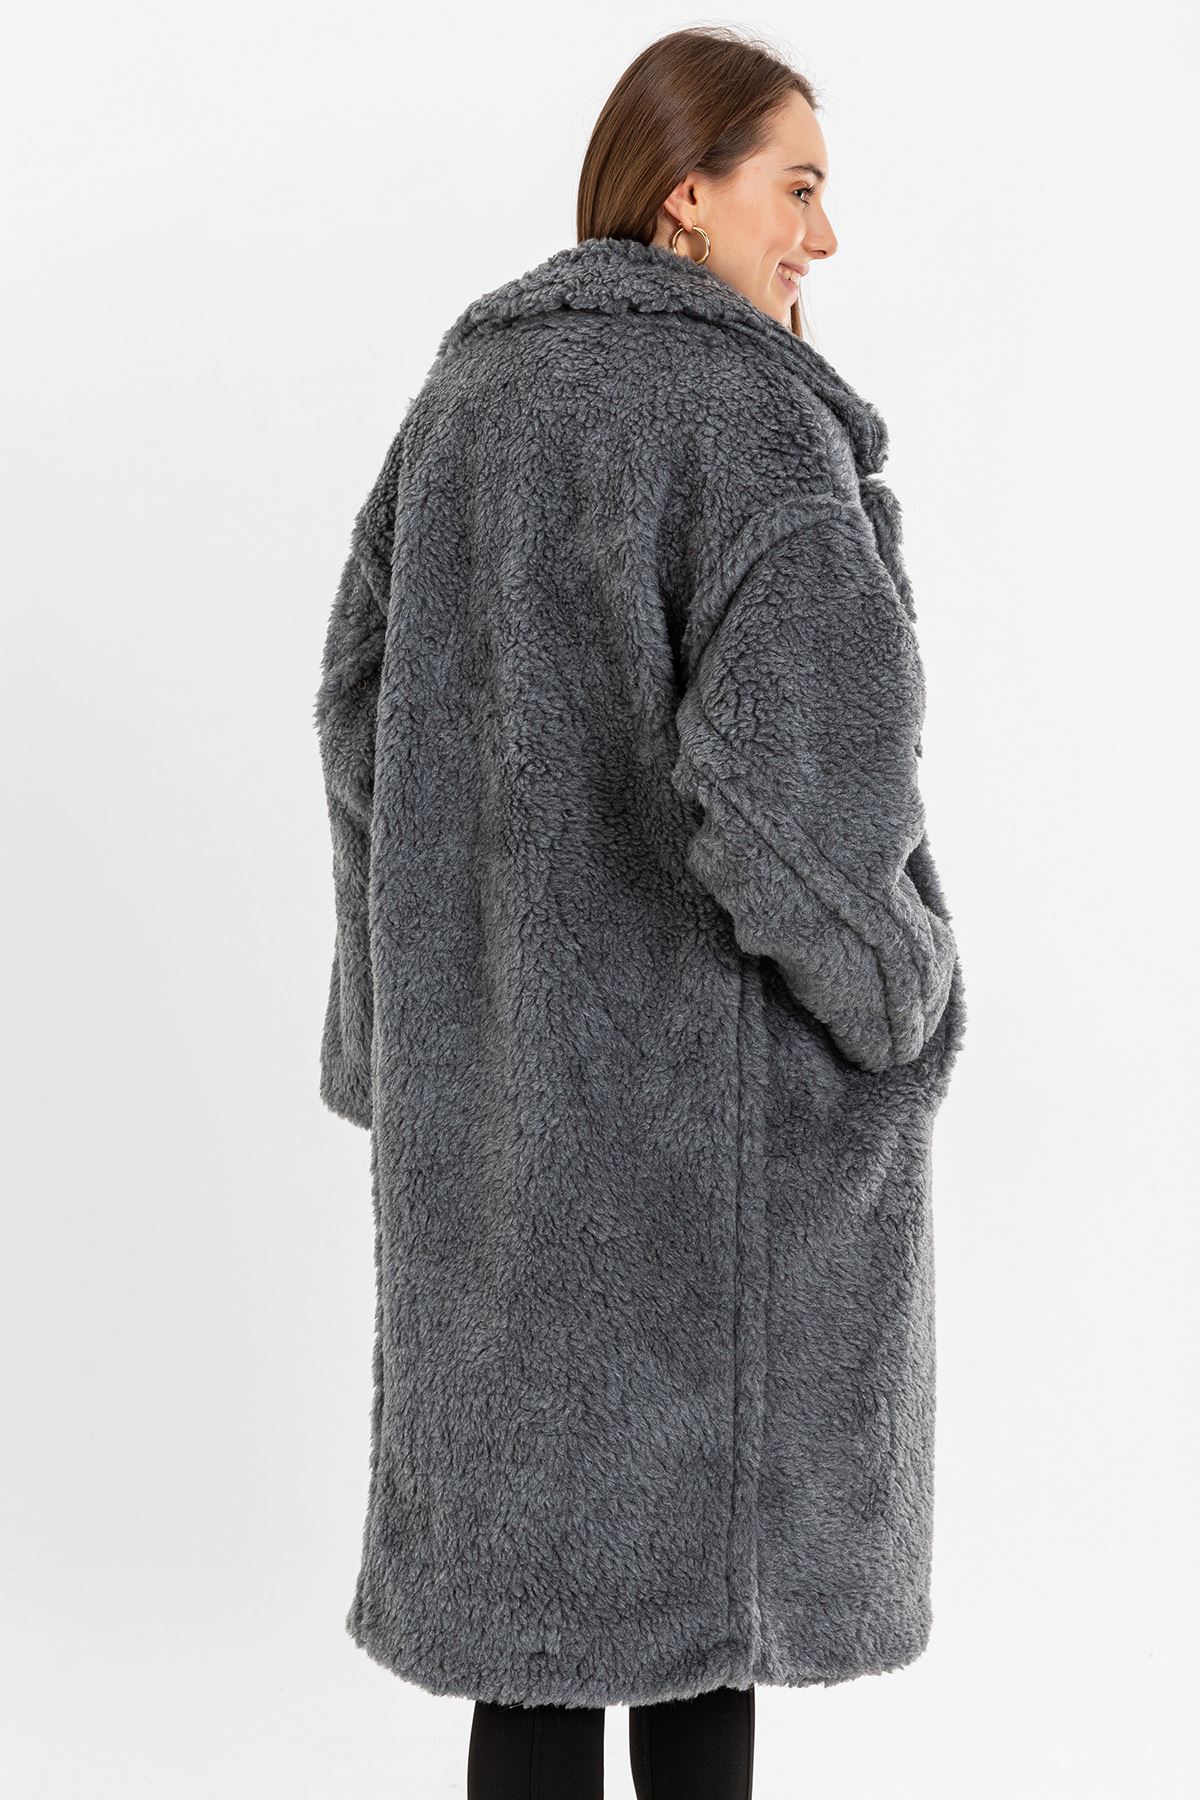 Teddy Kumaş Ceket Yaka Diz Altı Boy Oversize/Salaş Kadın Kaban-Gri